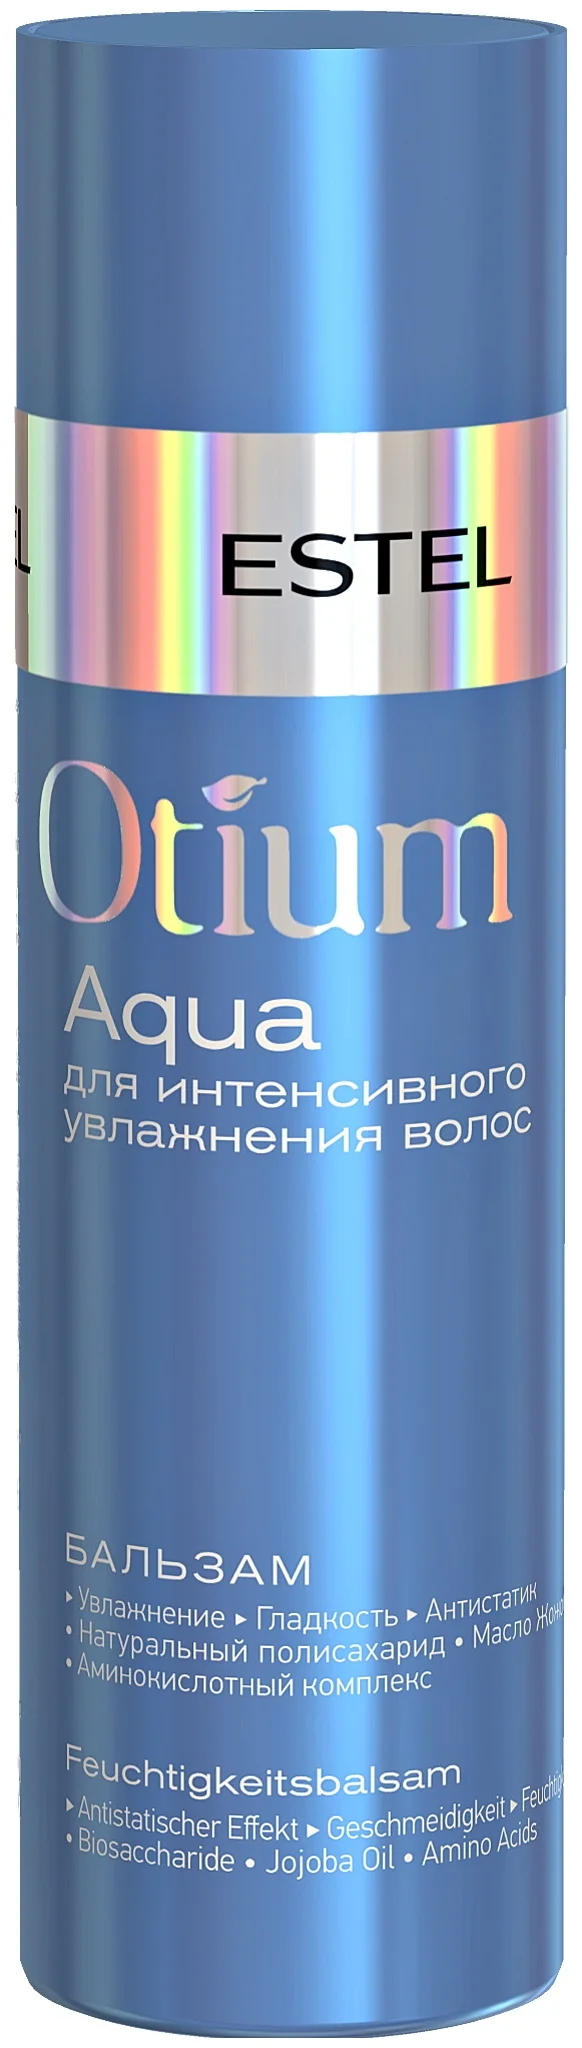 Estel Professional Otium Aqua для интенсивного увлажнения - для ежедневного применения